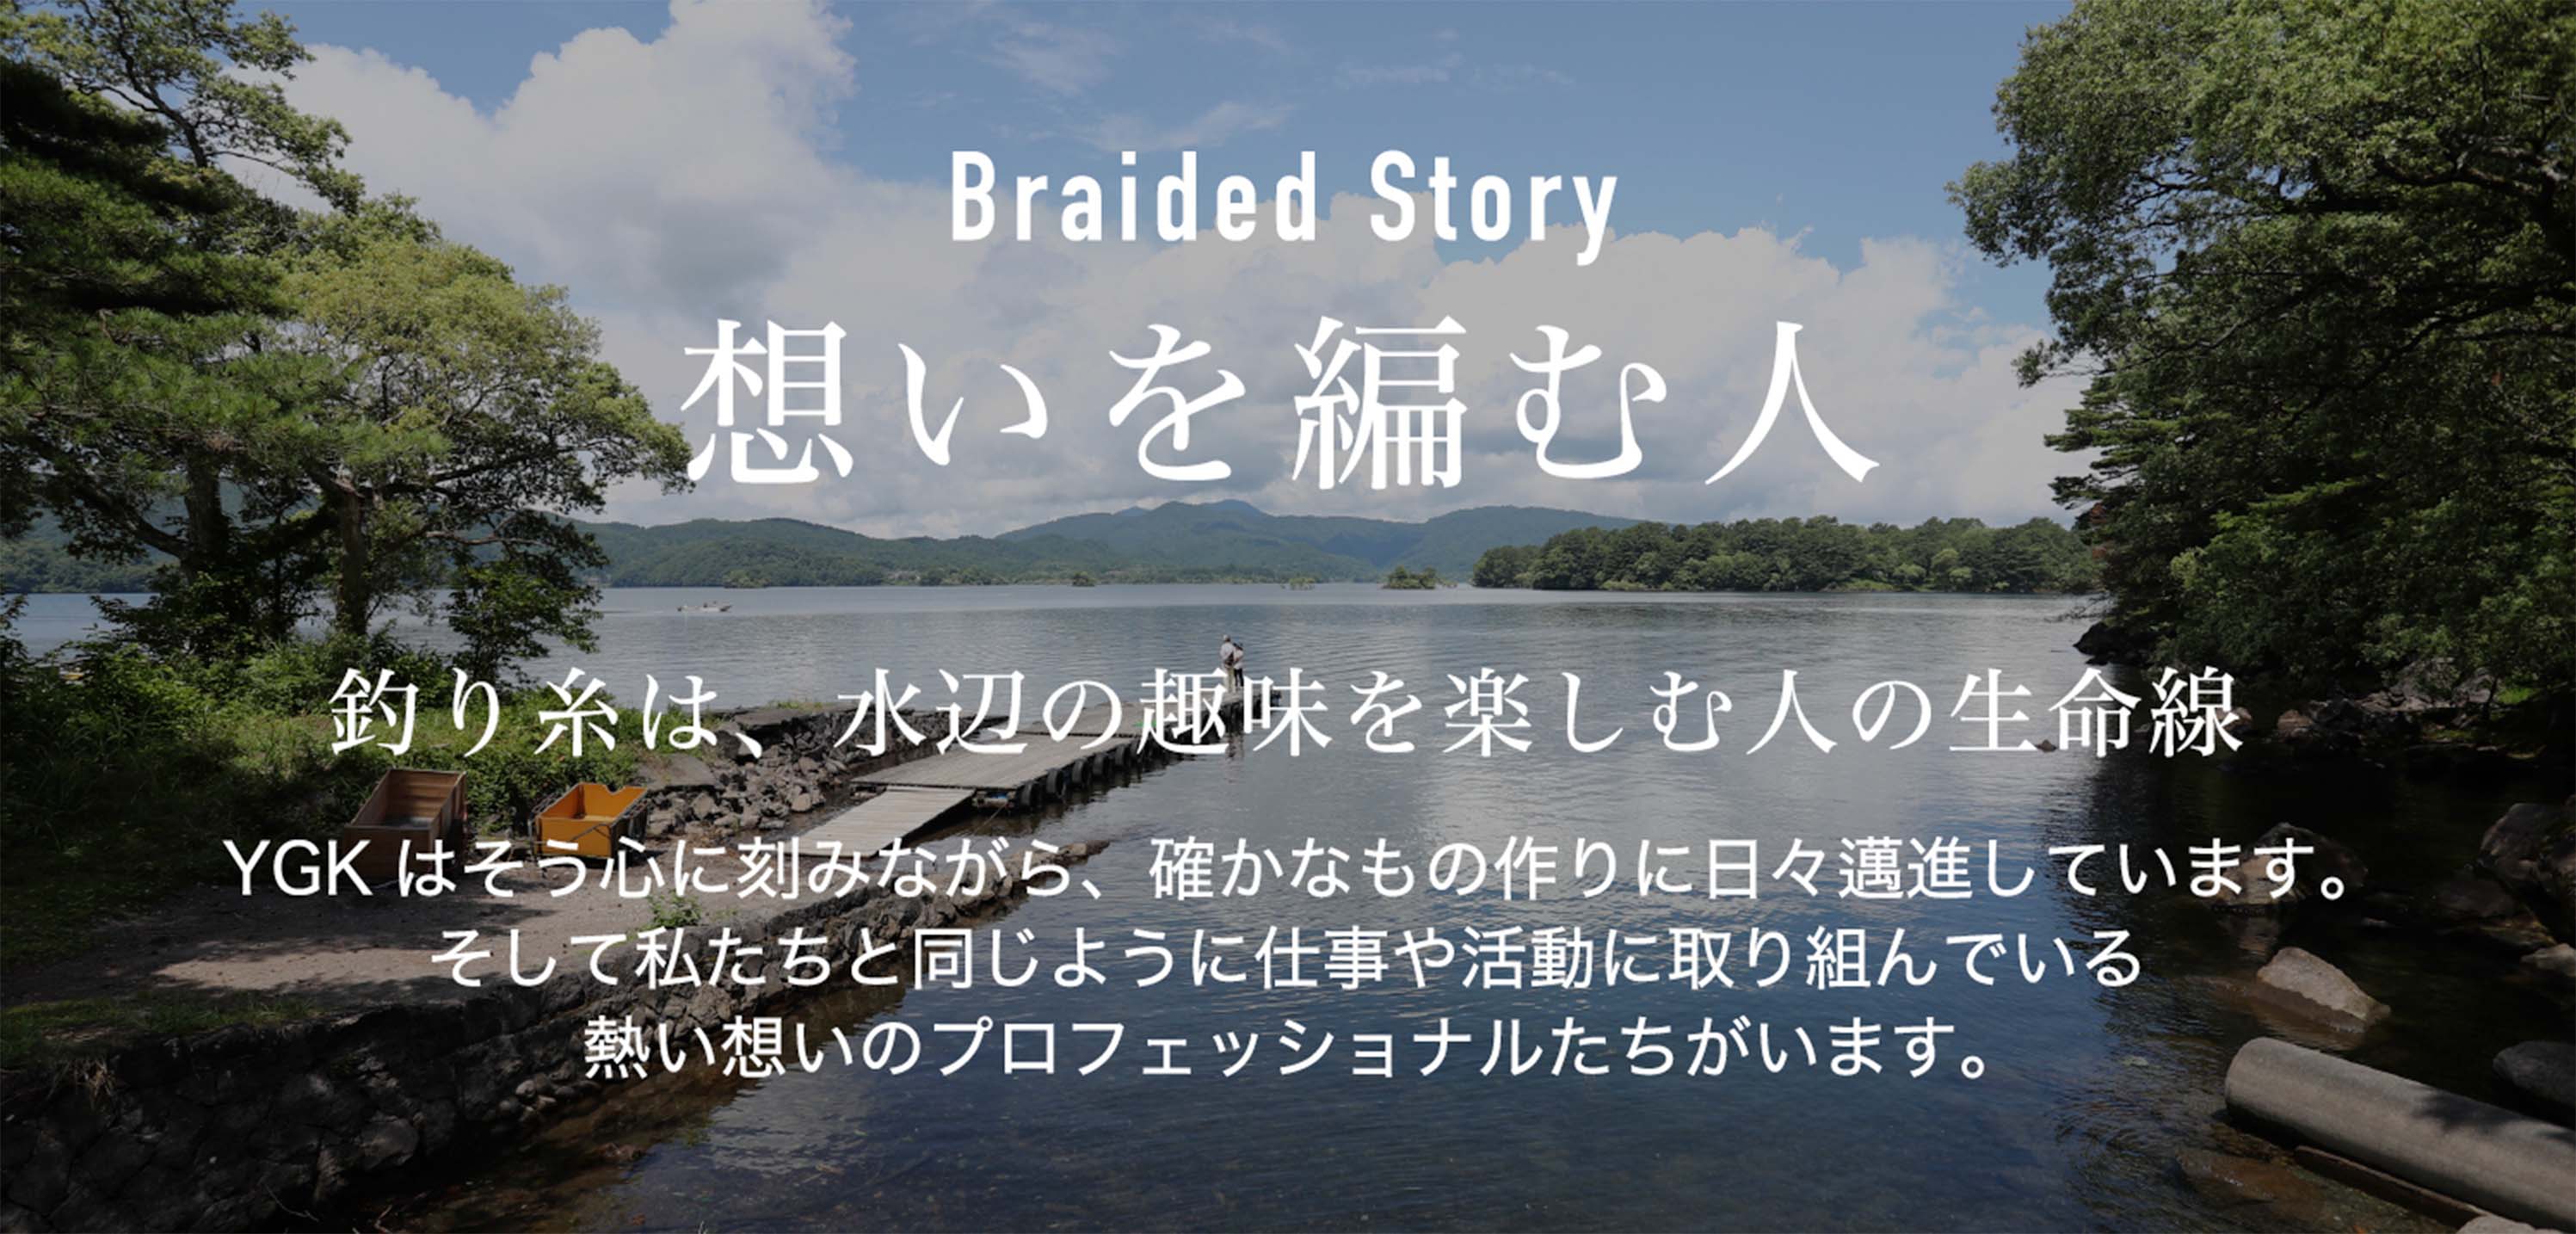 XBRAID ブランドサイト